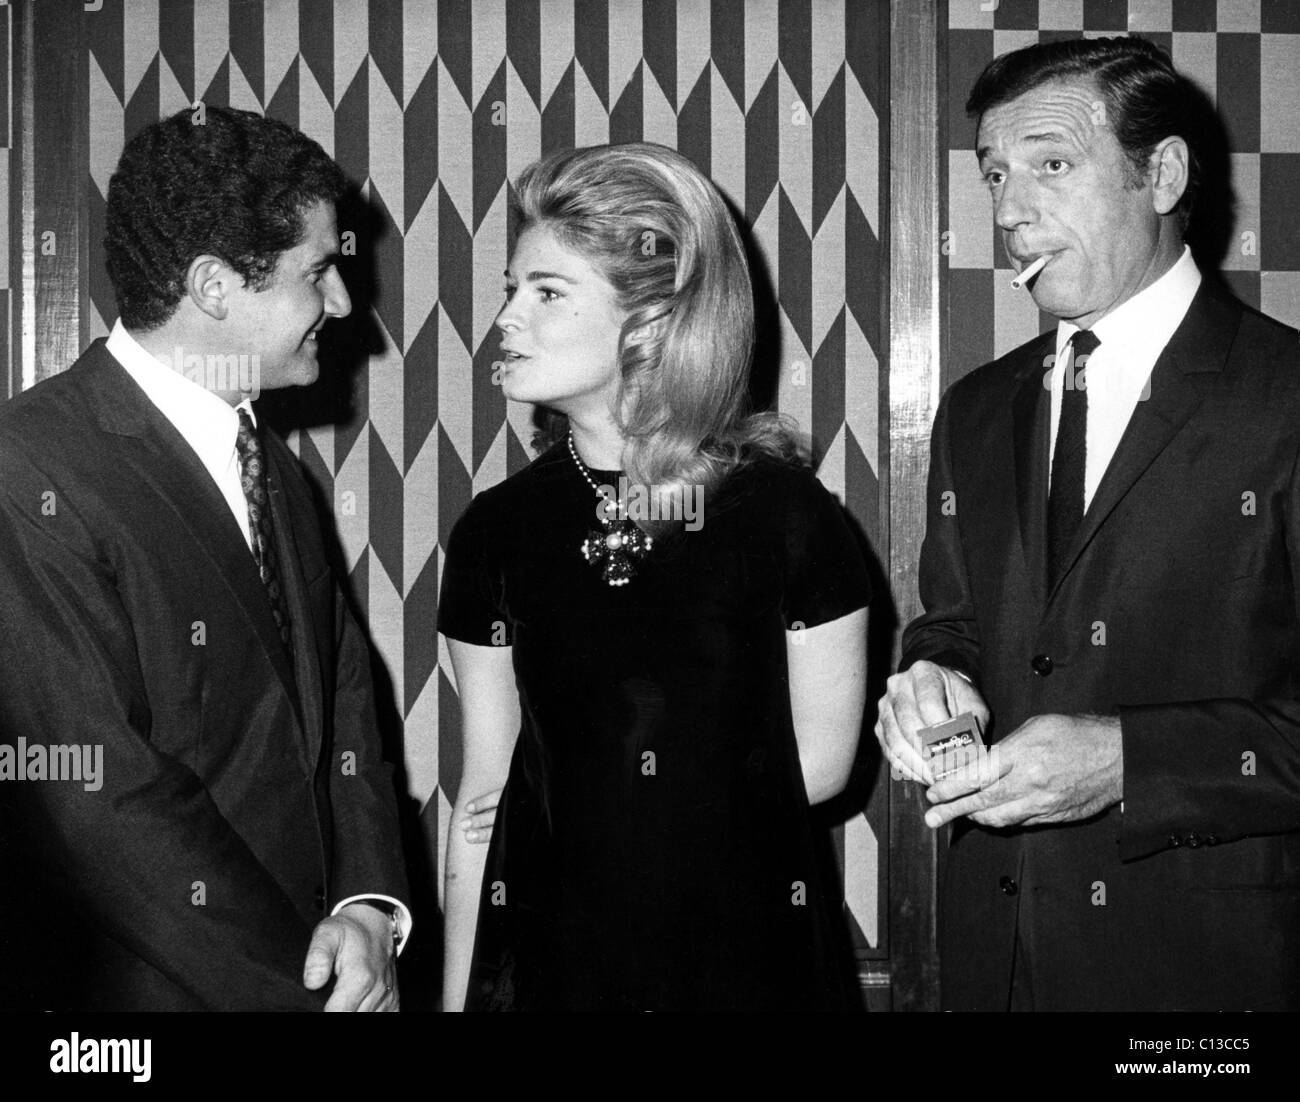 Réalisateur Claude LeLouch, Candice Bergen, Yves Montand lors d'une fête en l'honneur du directeur, New York, 20 février 1967. Banque D'Images